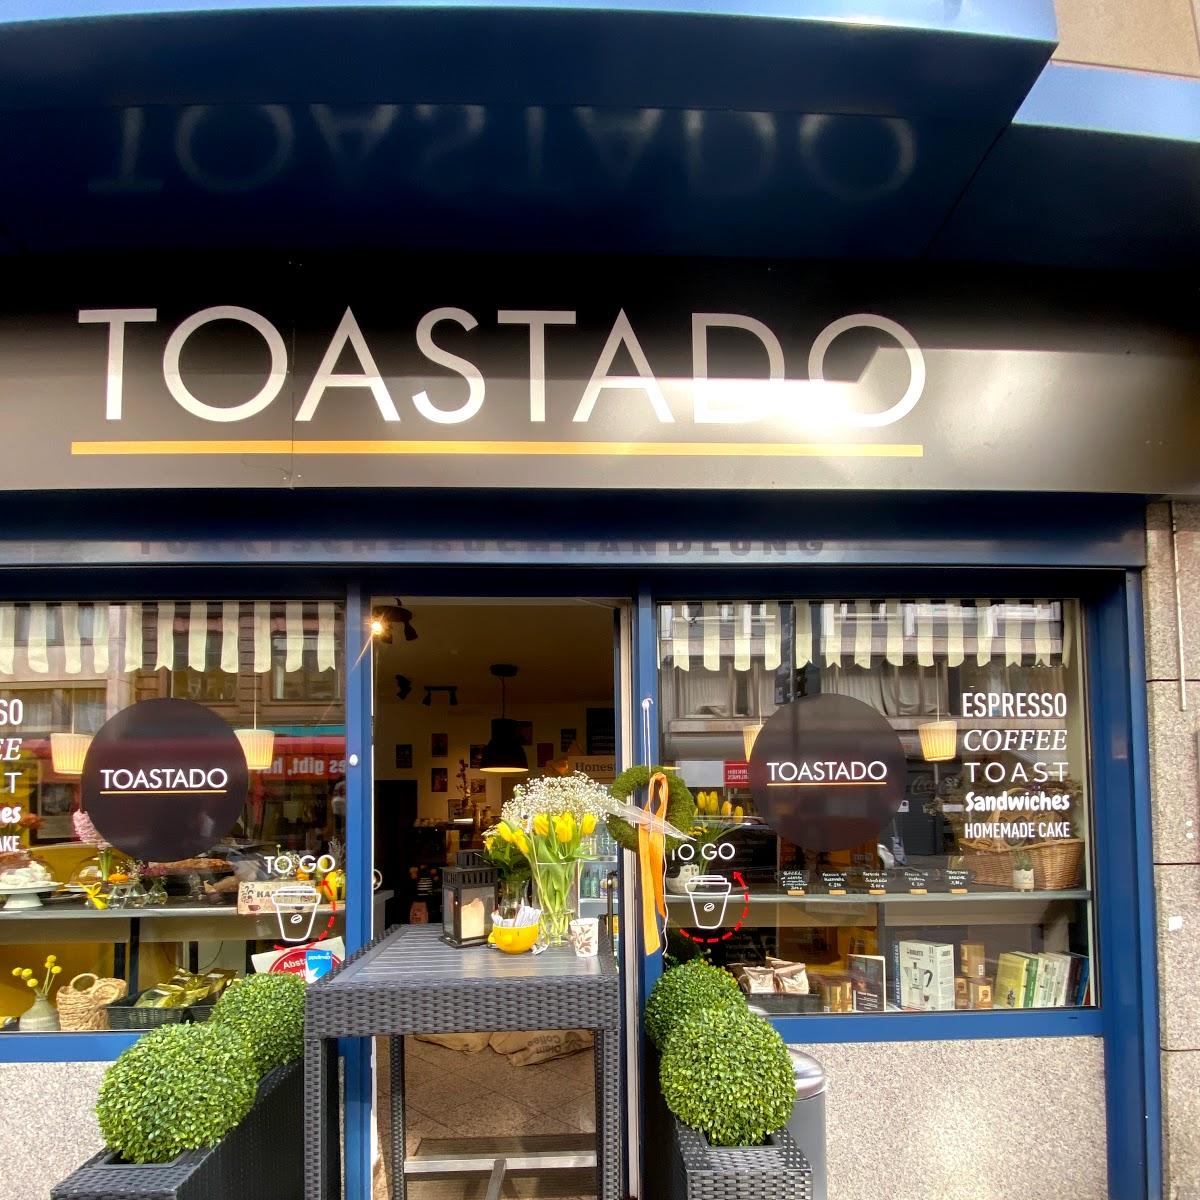 Restaurant "Toastado" in Frankfurt am Main